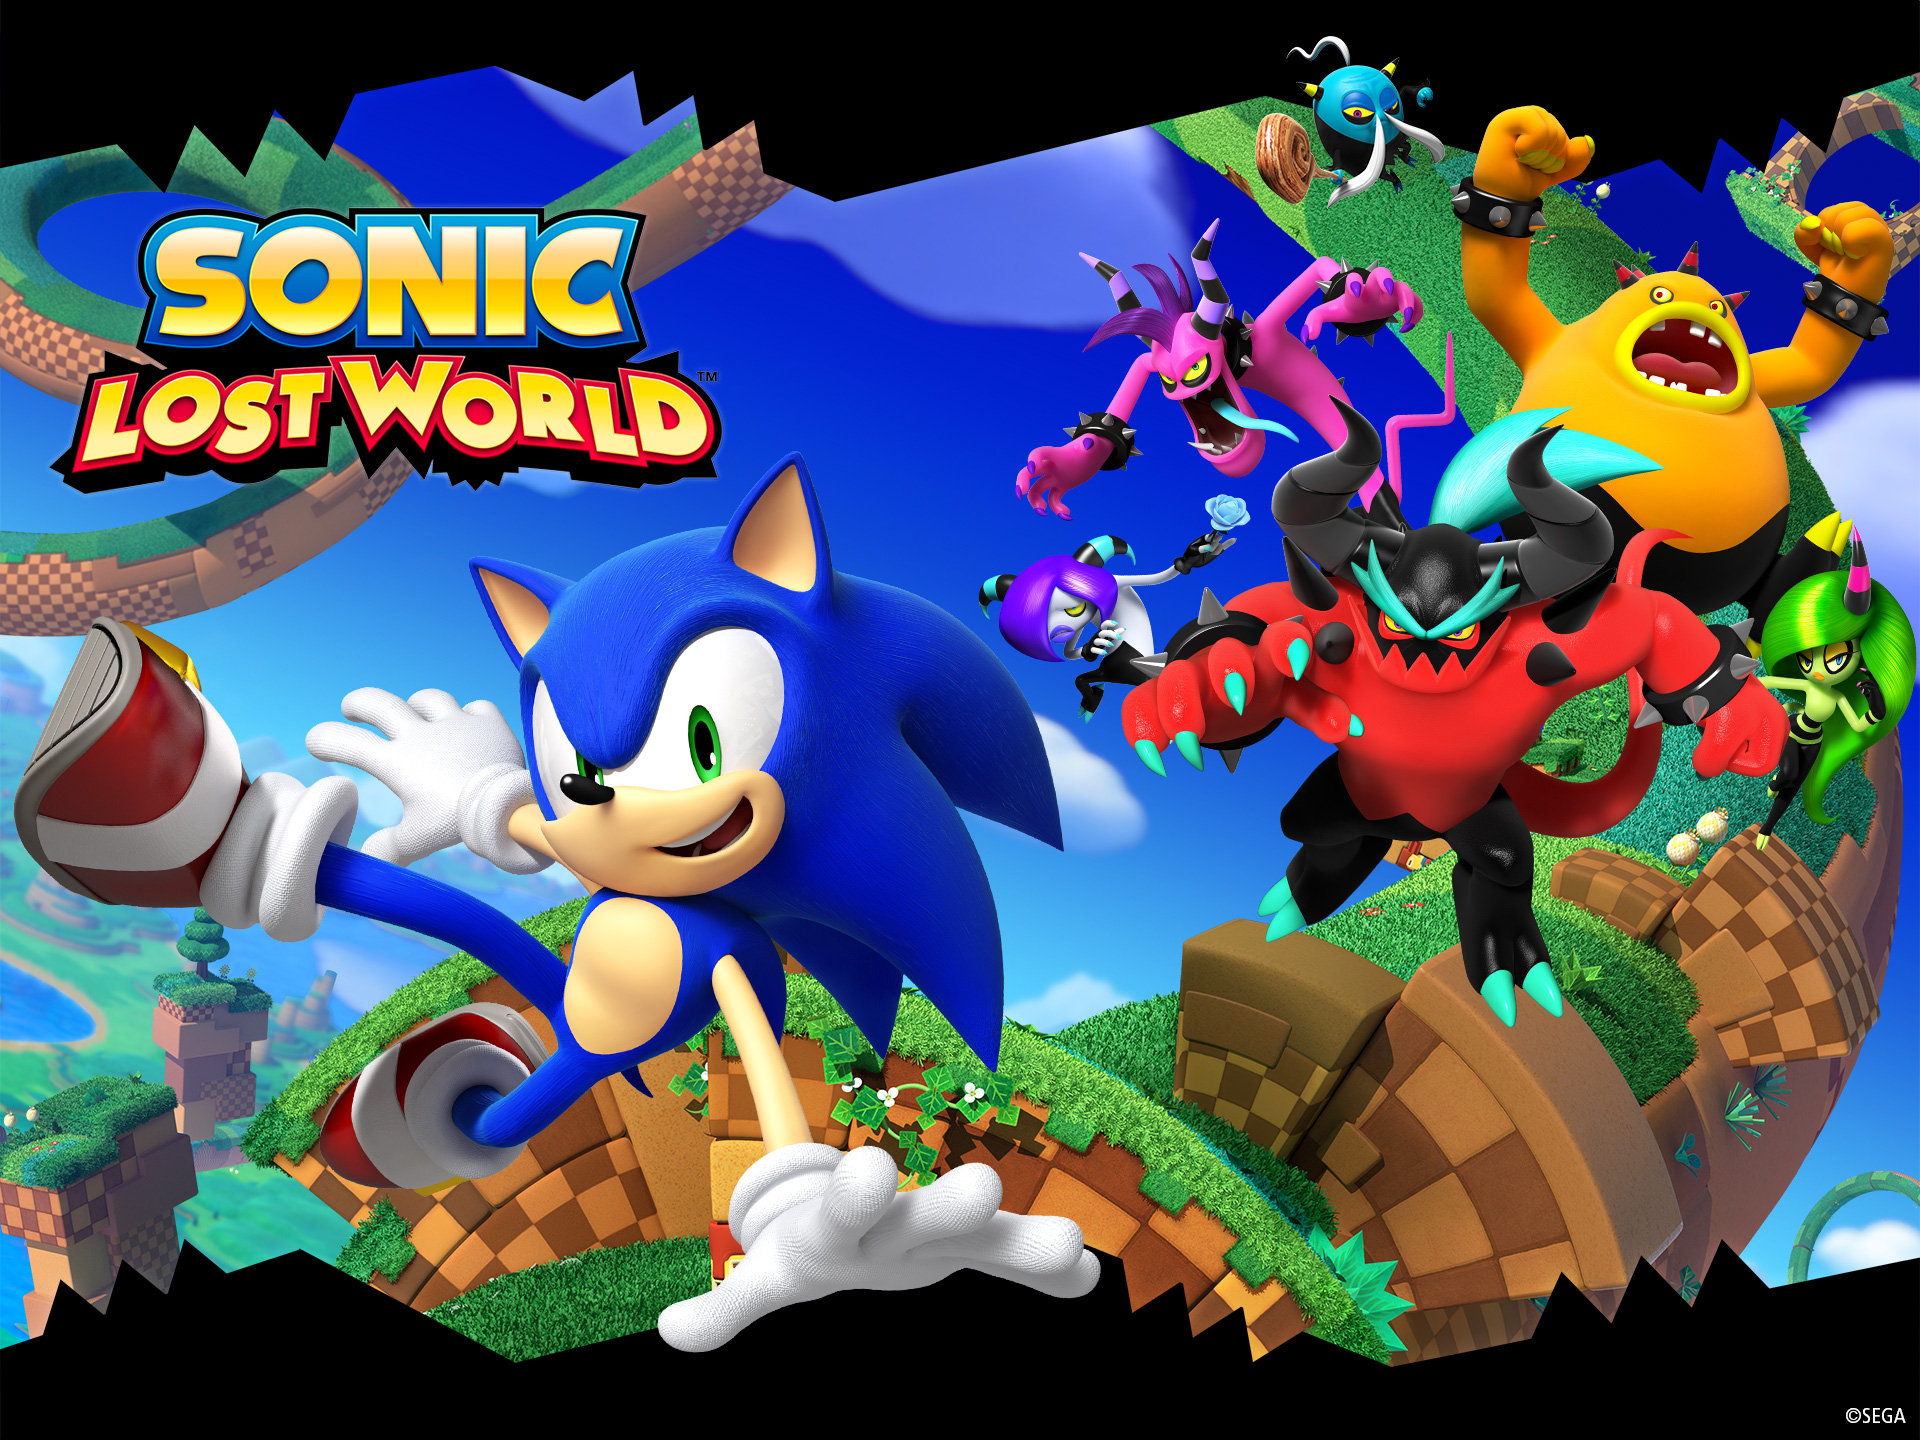 Hình nền Sonic Lost World HD sẽ đem đến cho bạn cảm giác sống động như đang tiếp tục khám phá thế giới của chú nhím Sonic và đồng đội. Với chất lượng hình ảnh đẹp và sắc nét, bạn sẽ không thể rời mắt khỏi màn hình khi được ngắm nhìn hình nền này.